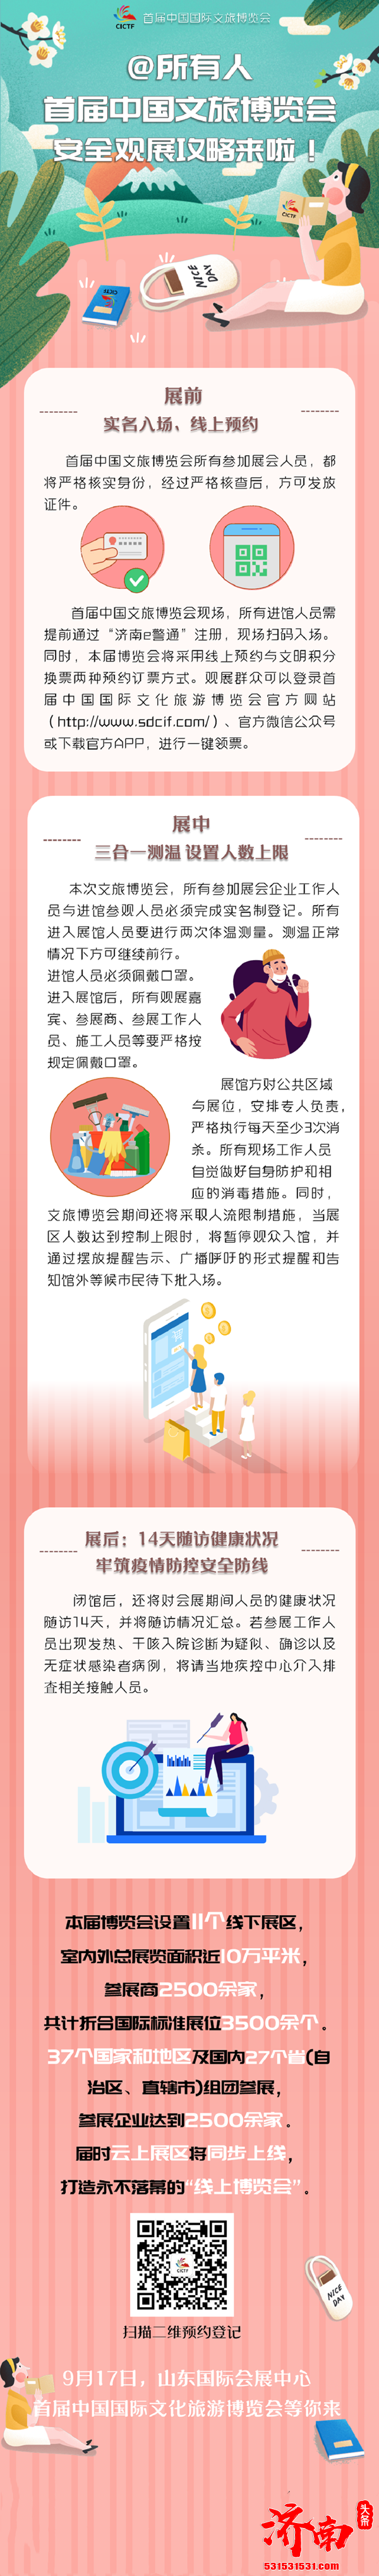 首届中国文旅博览会即将开幕需通过“济南e警通”注册扫码入场